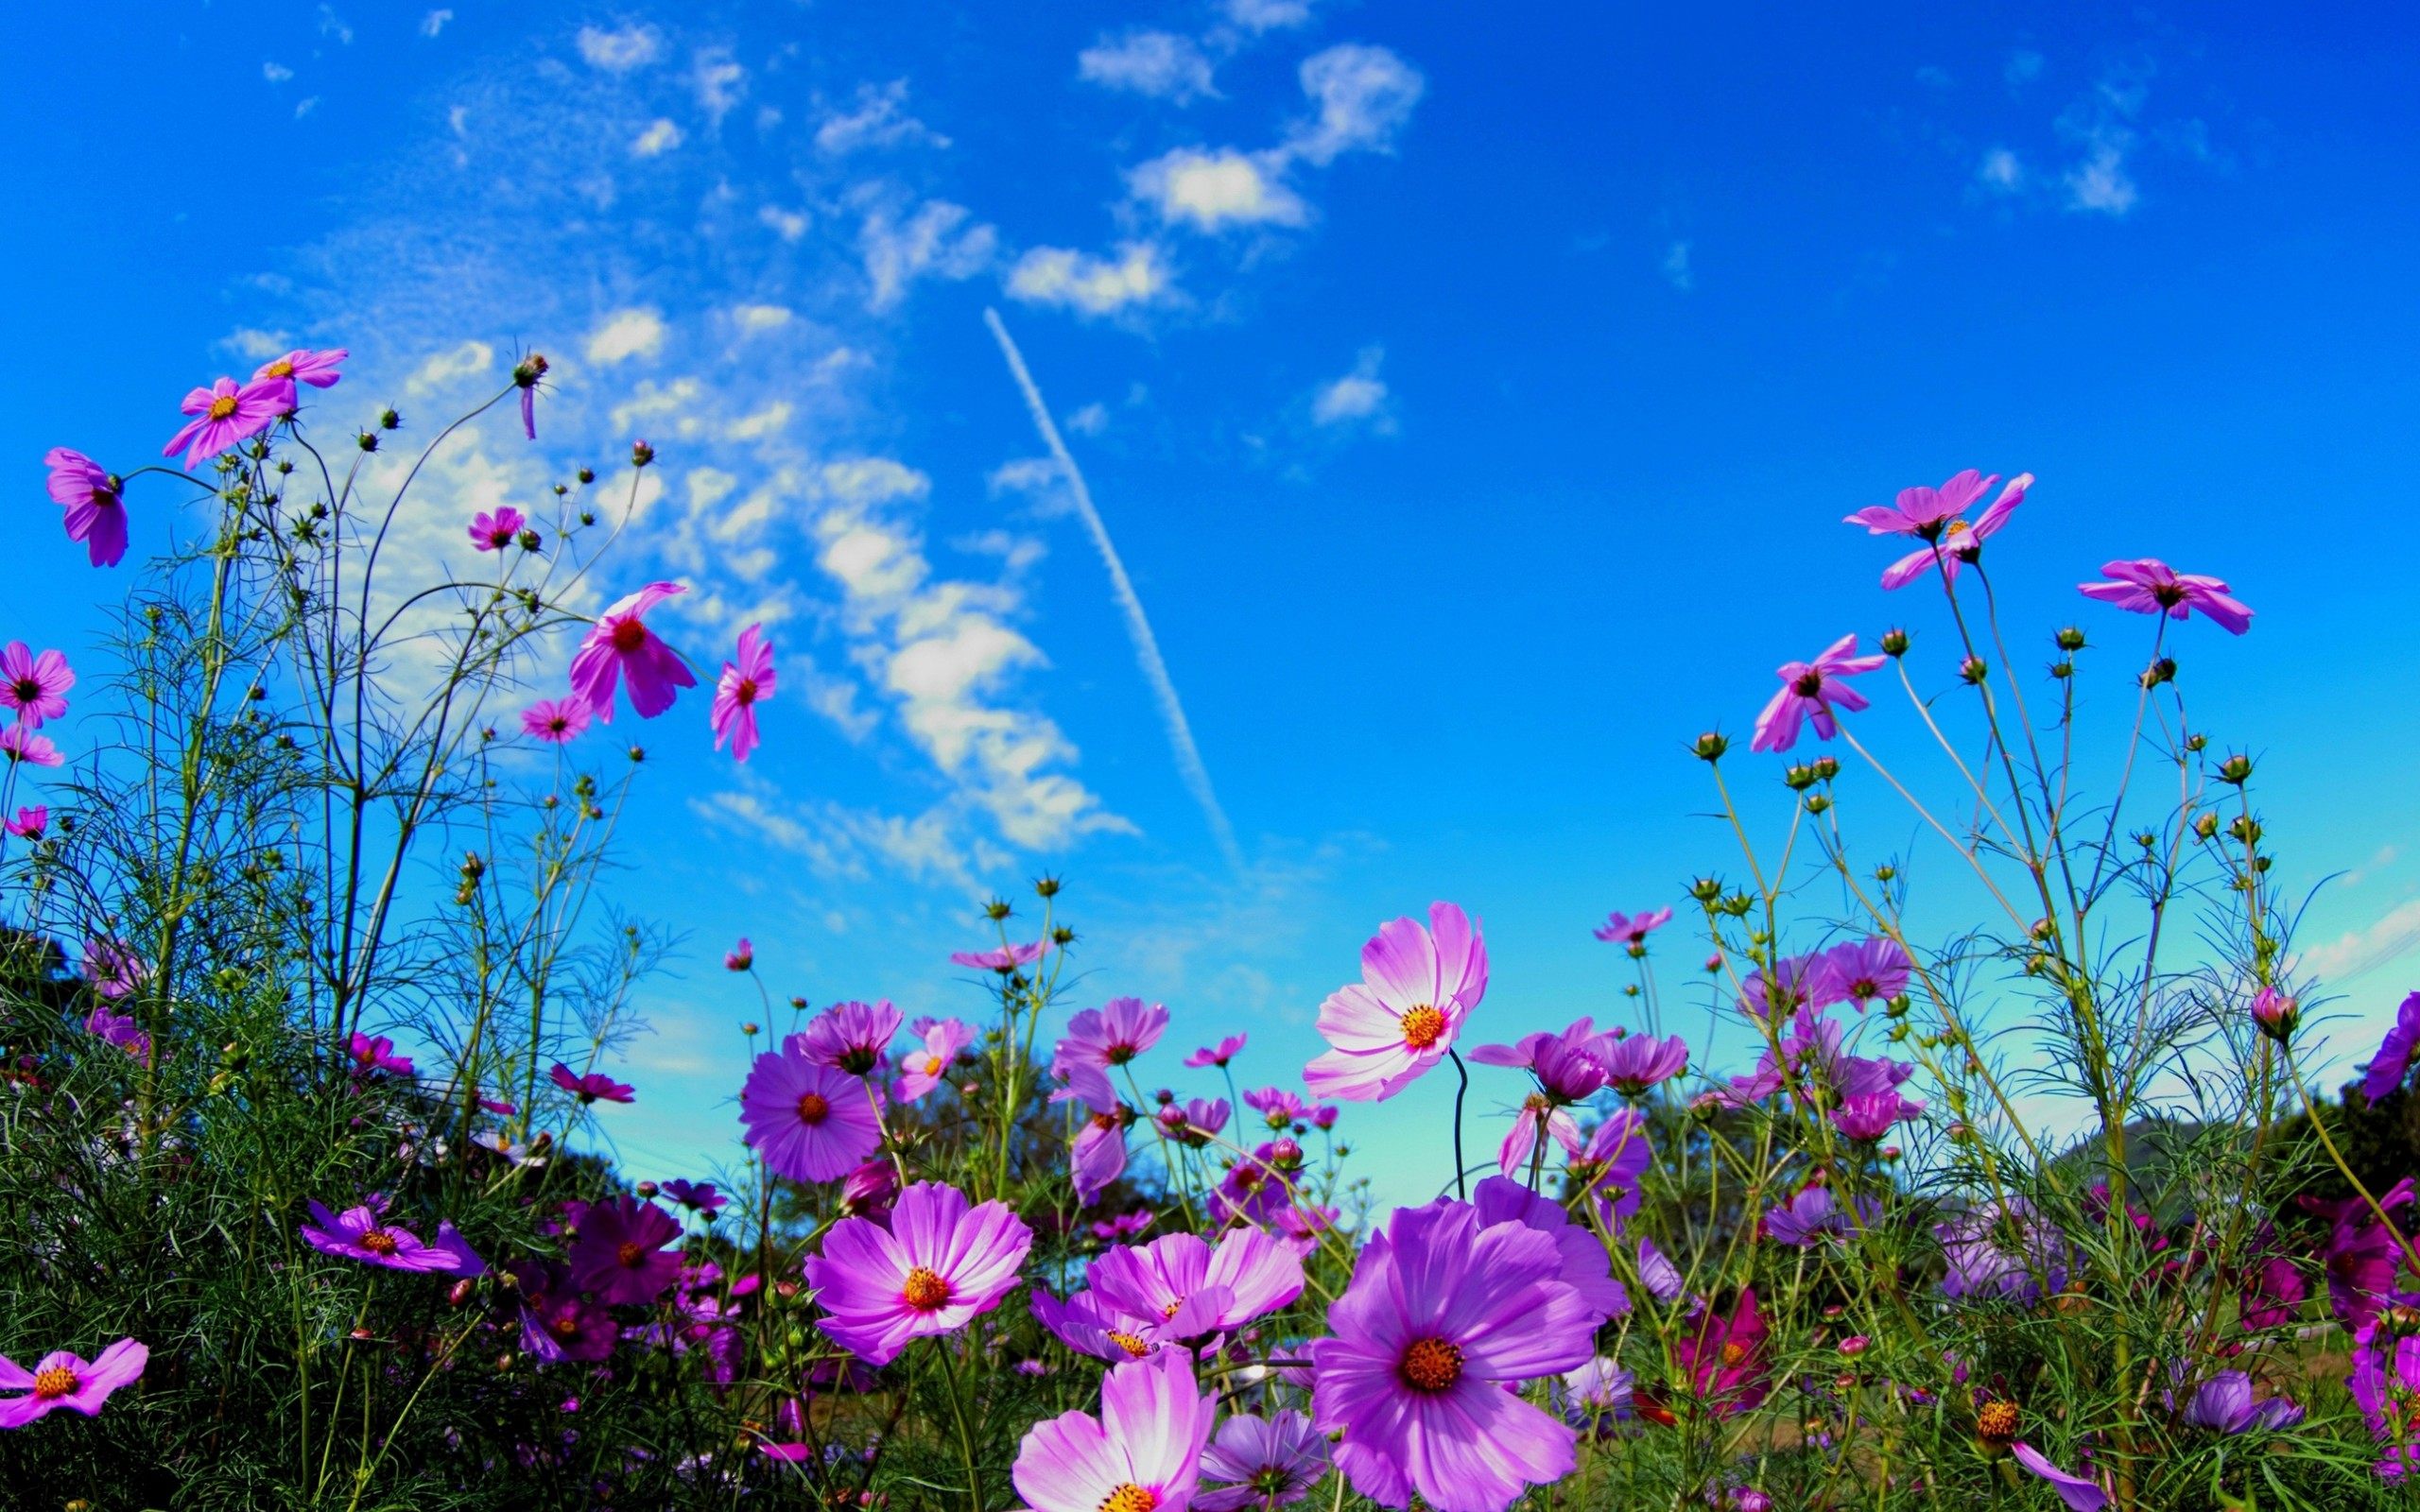 Field Flowers Wallpaper For Desktop Of Pink